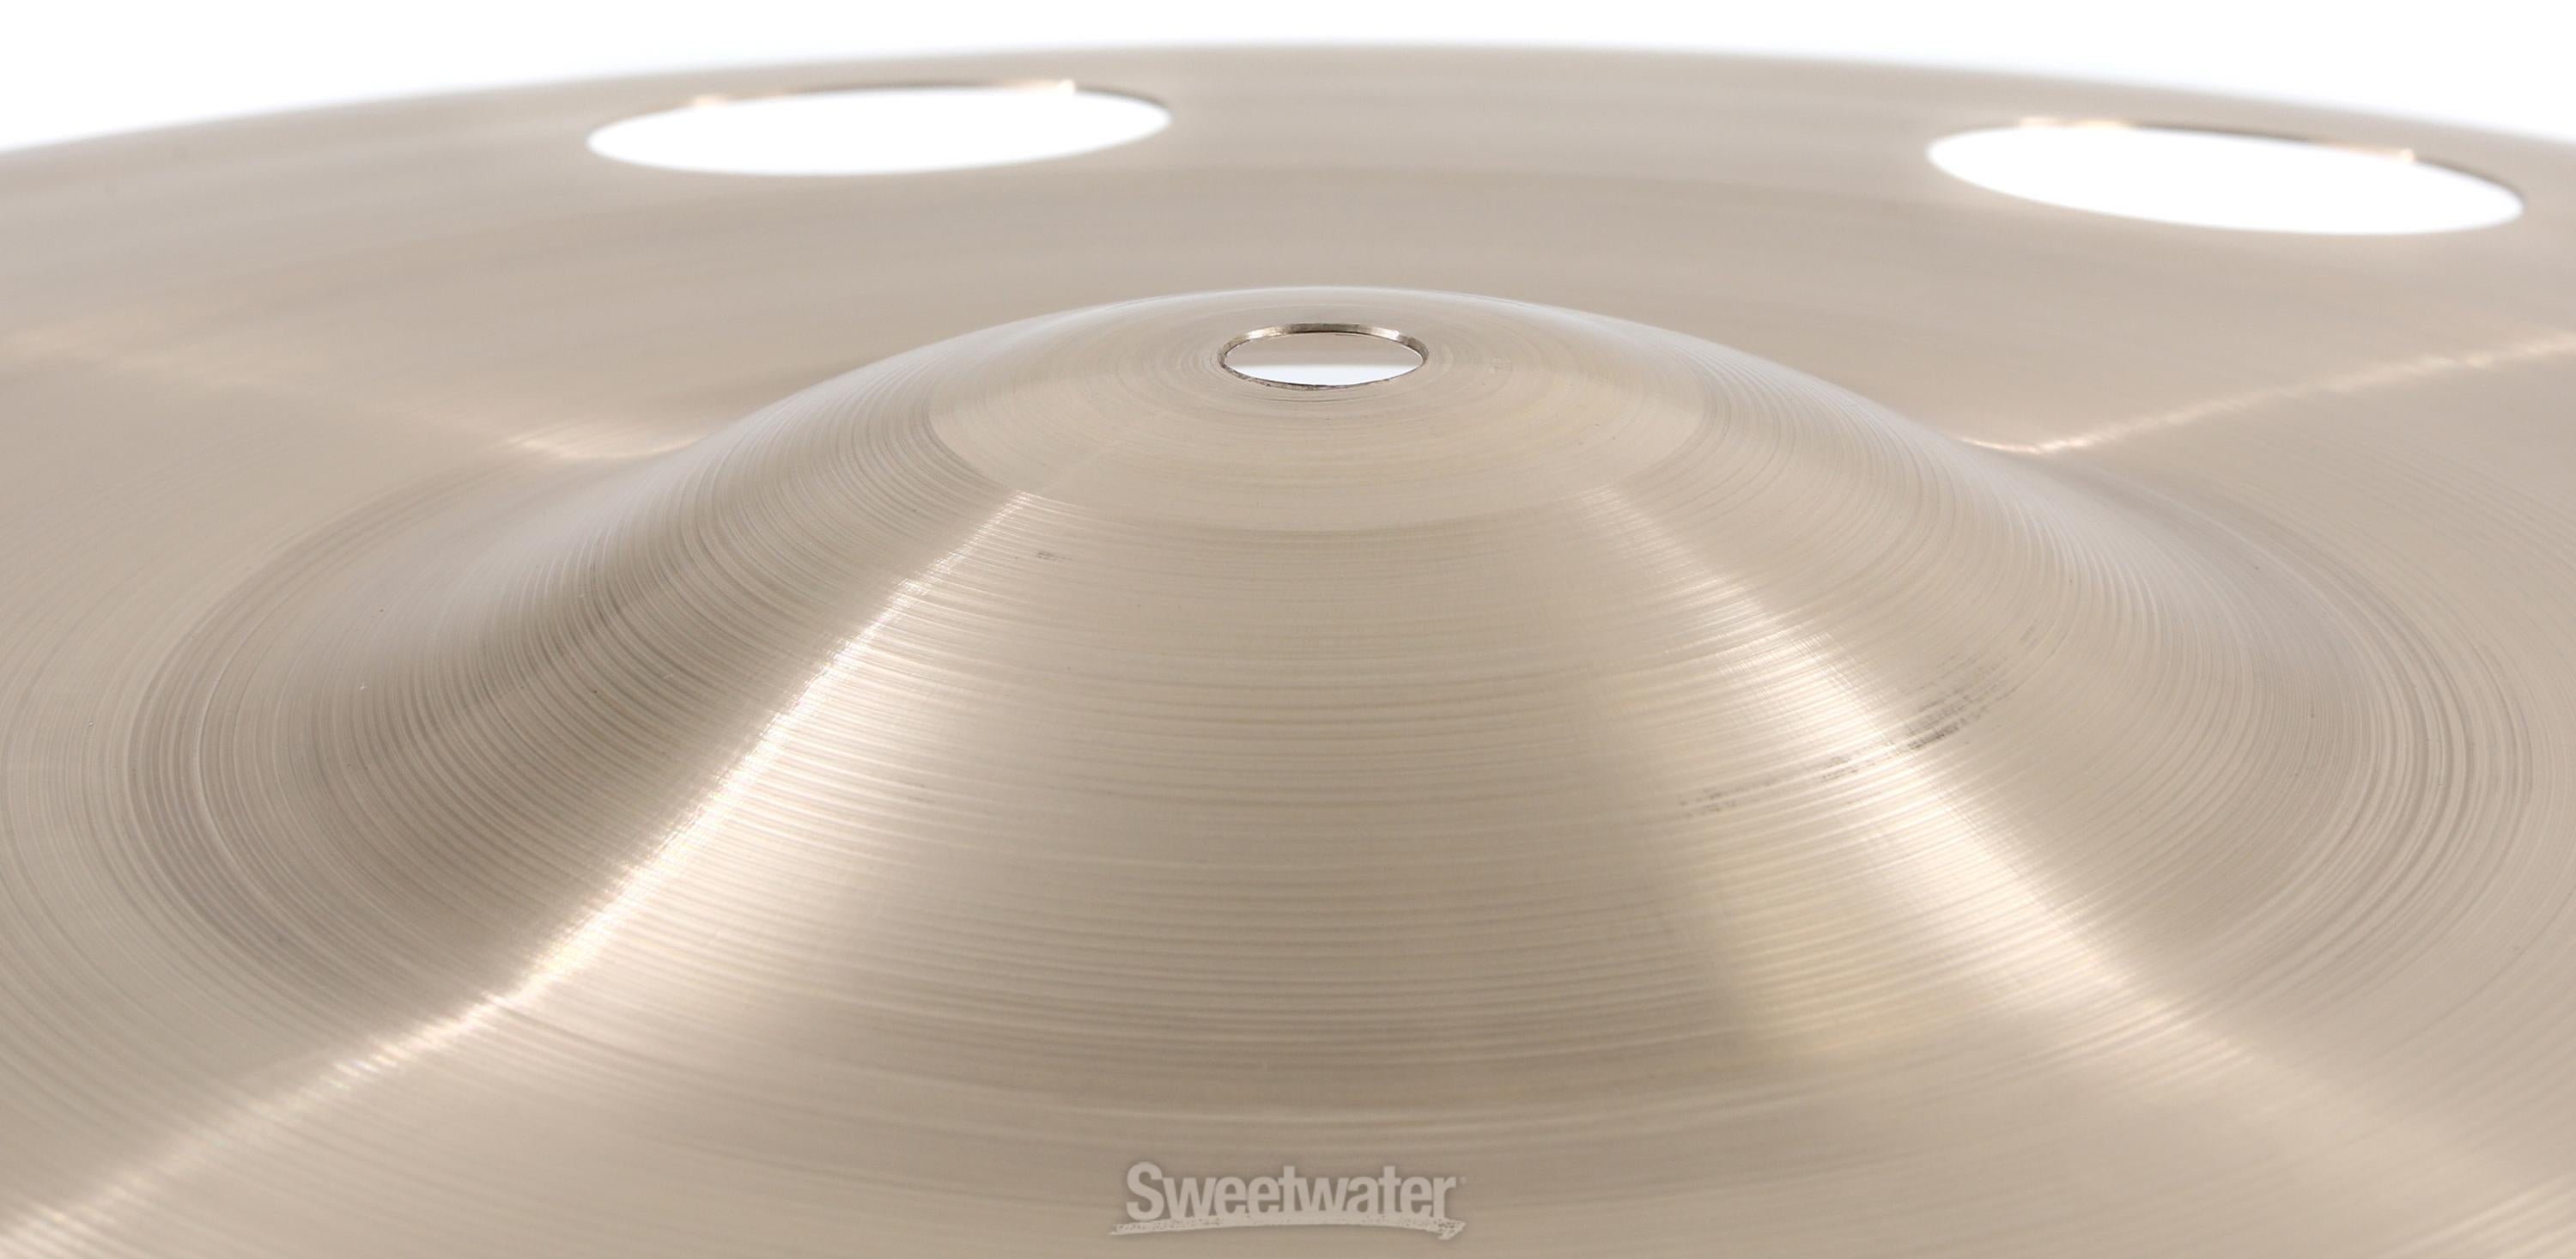 Sabian 18 inch AAX O-Zone Crash Cymbal | Sweetwater